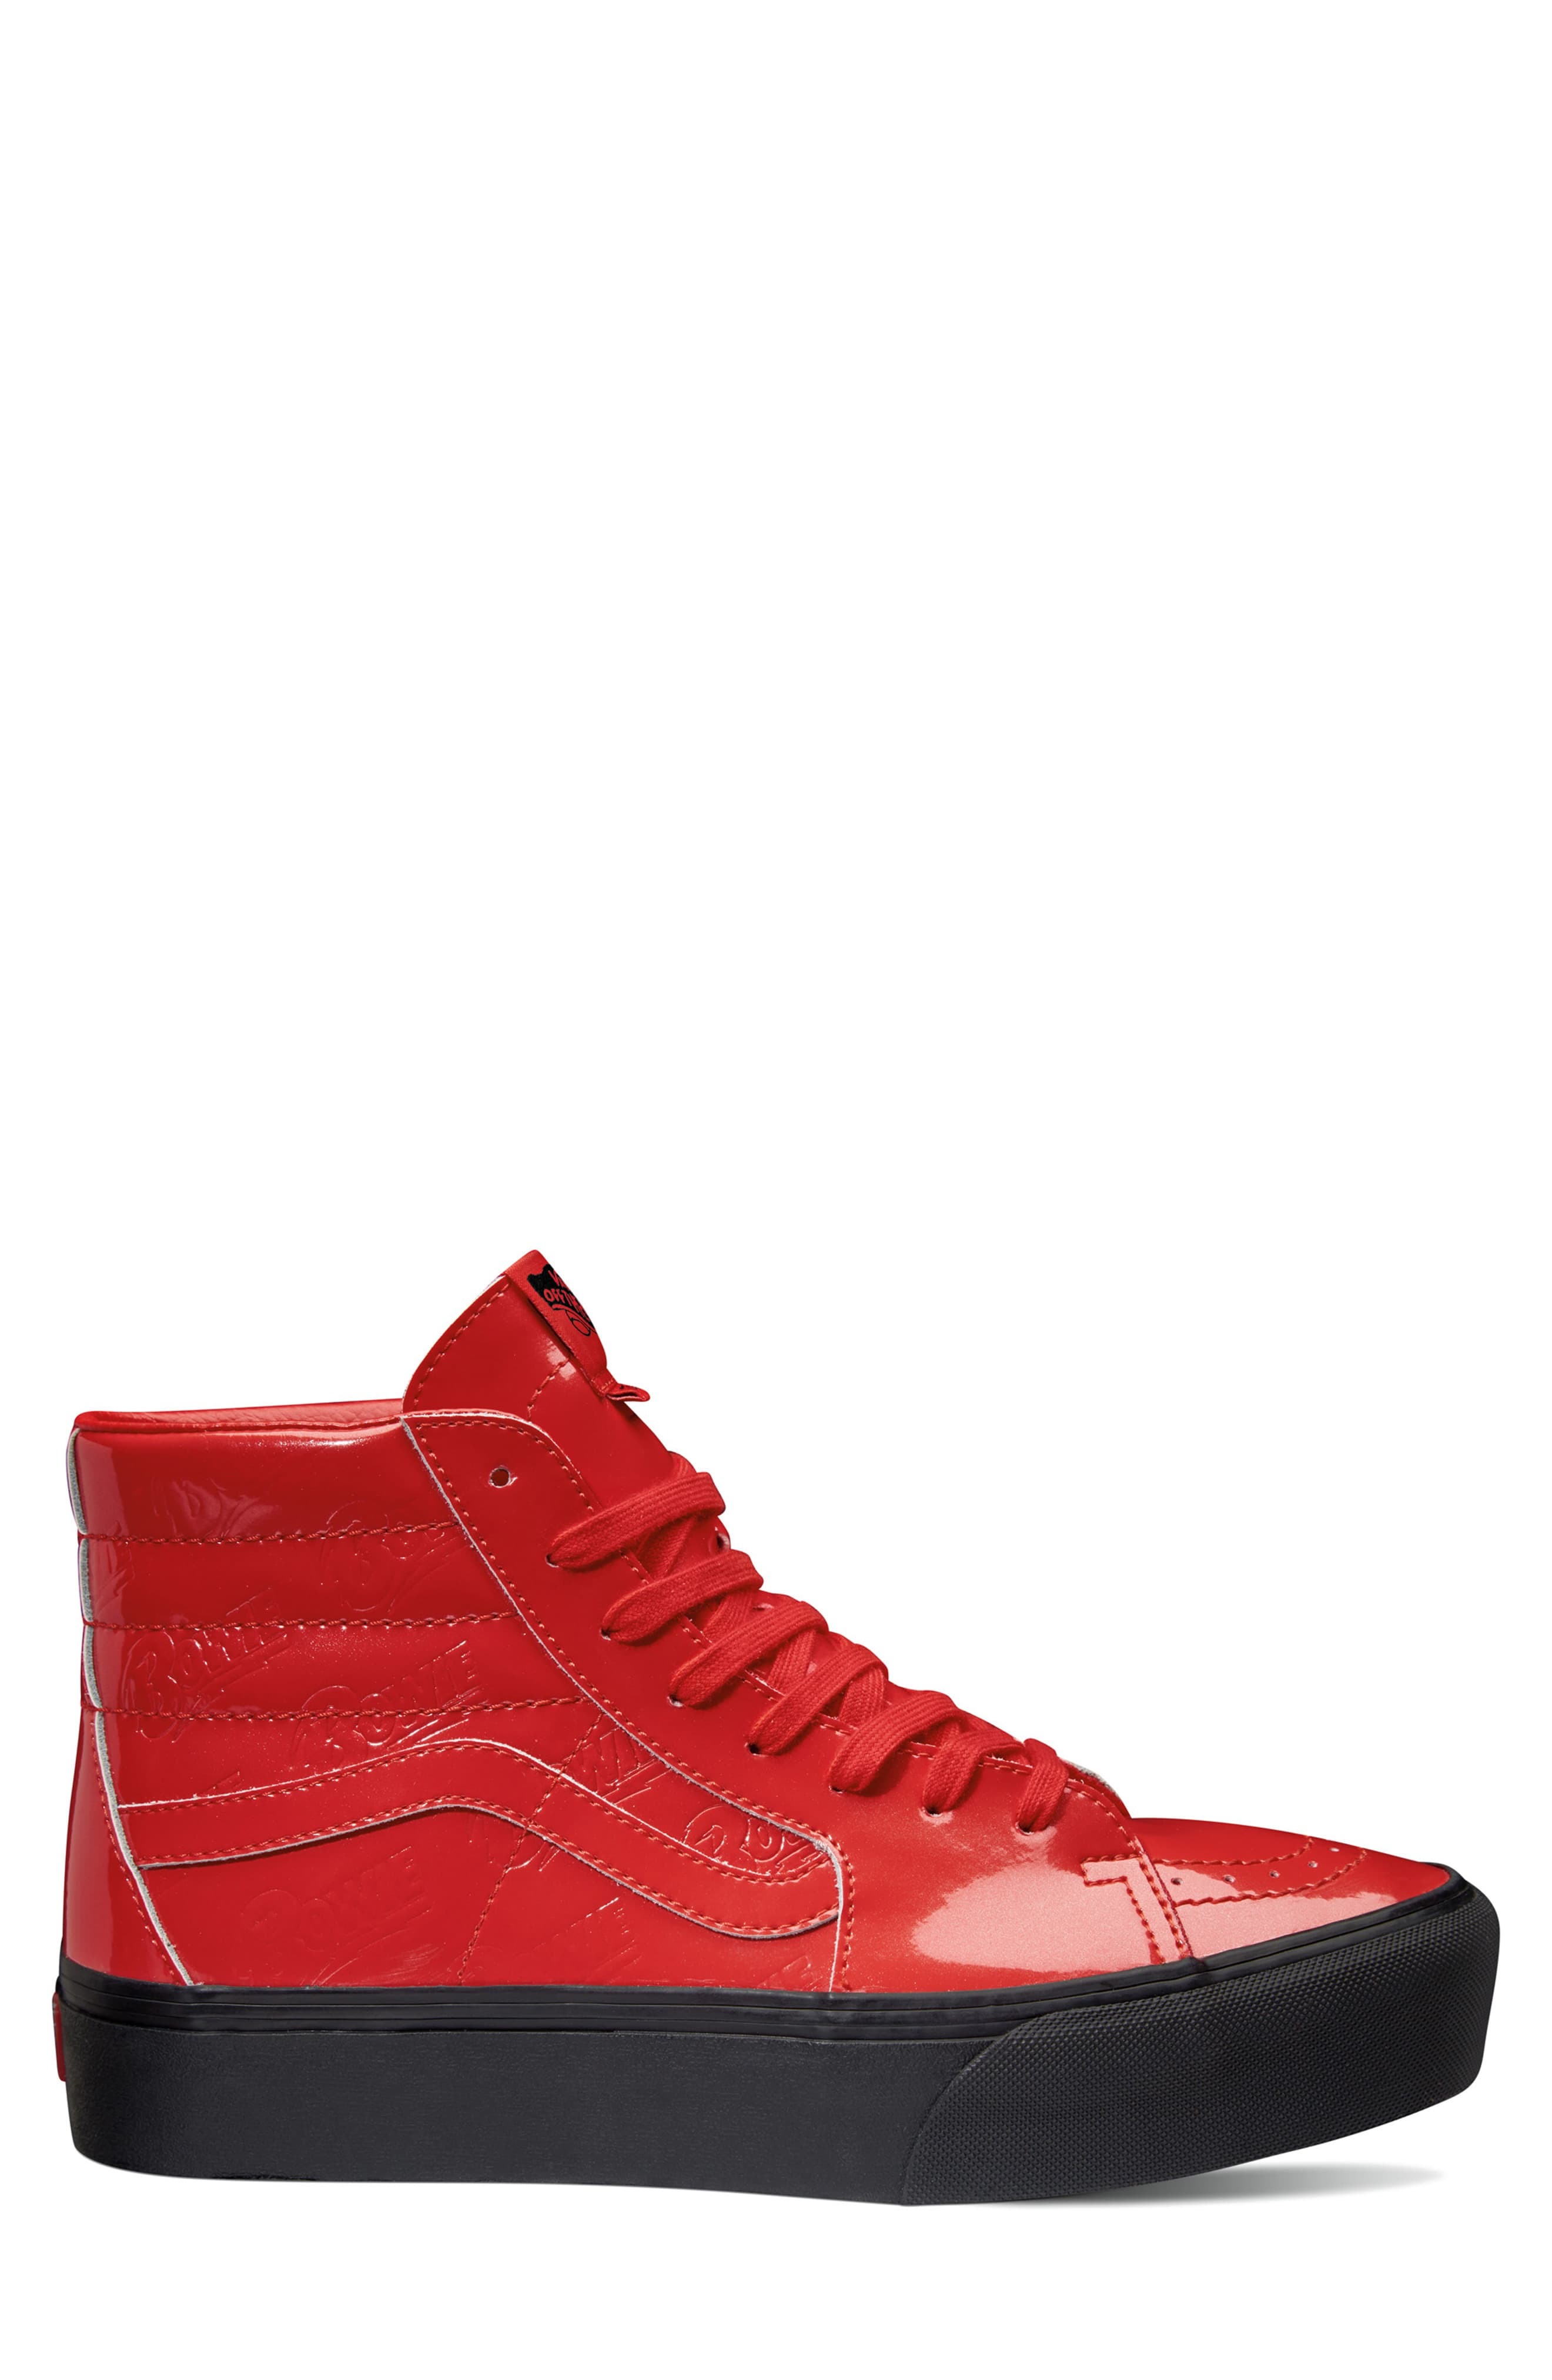 stride diary Poetry Vans X David Bowie Sk8 Hi Platform Sneaker, $84 | Nordstrom | Lookastic